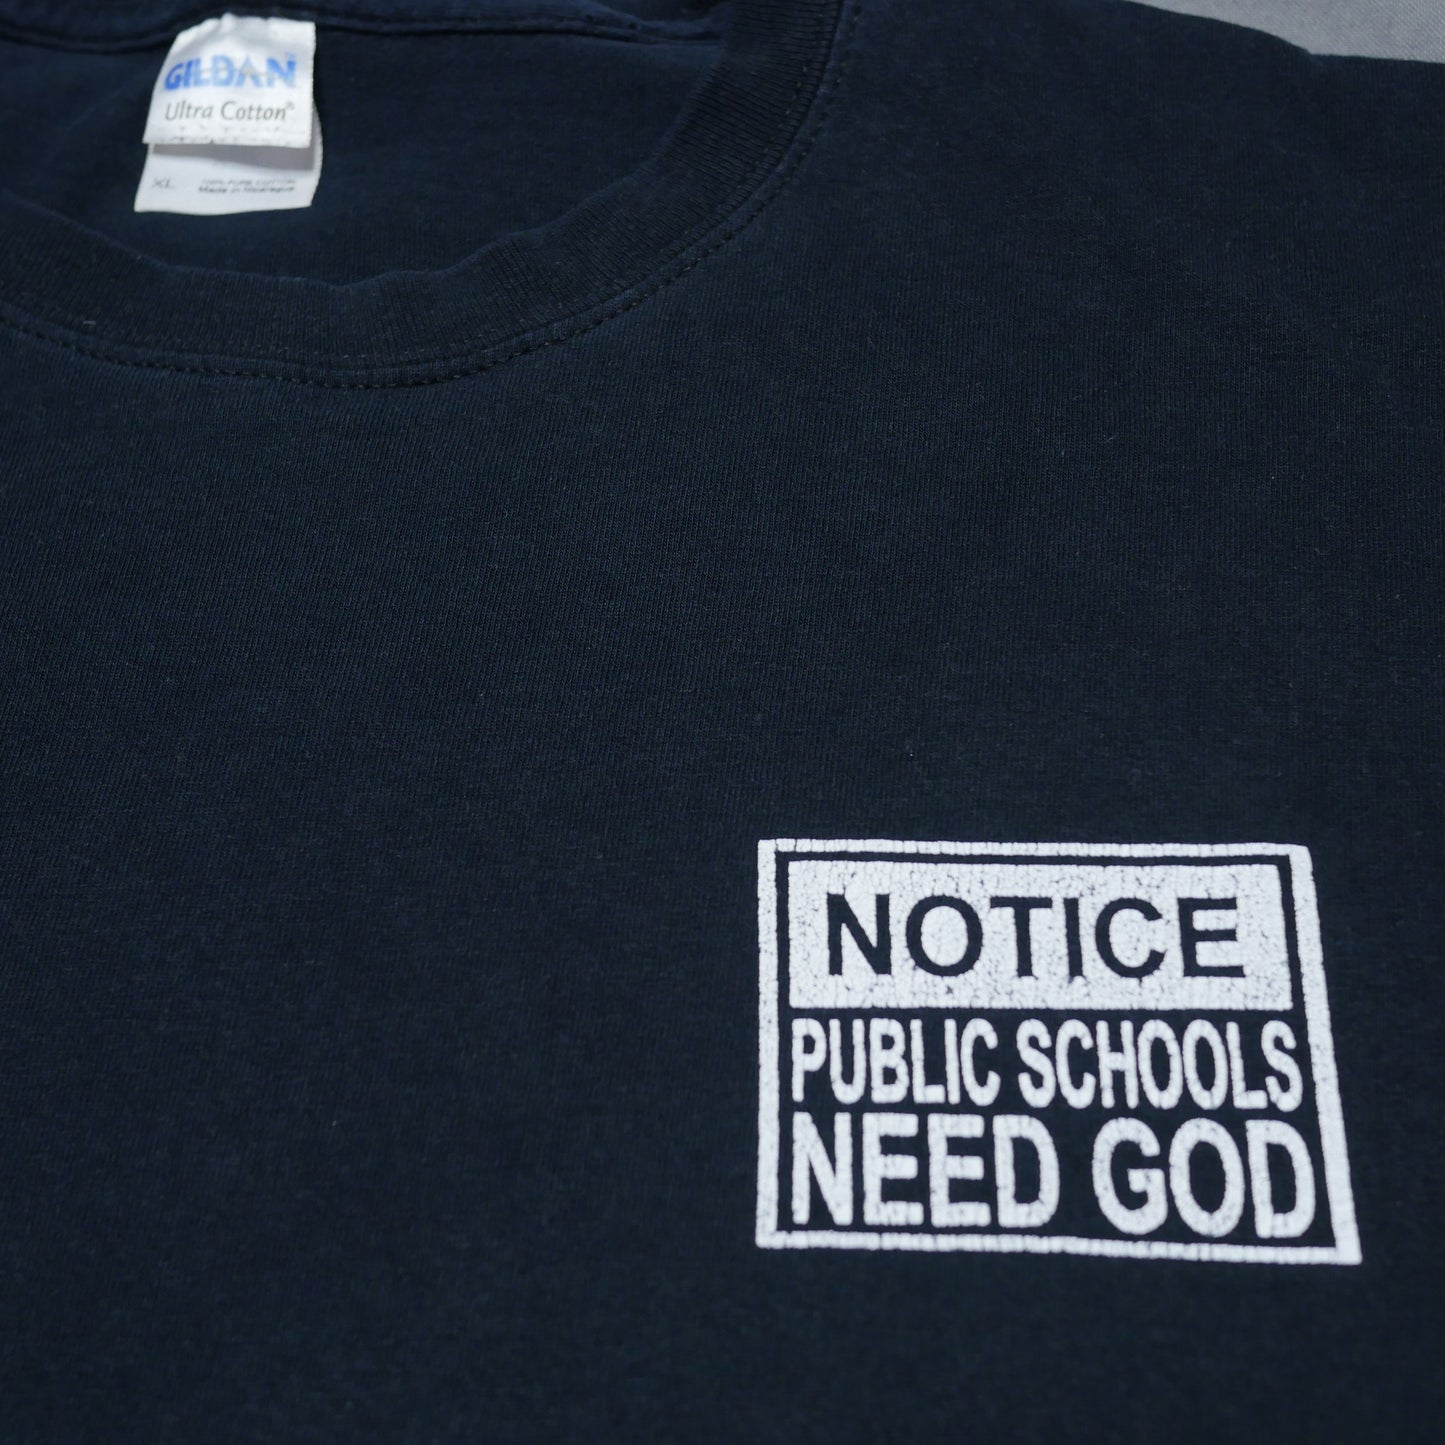 Public Schools Need God Shirt - XL